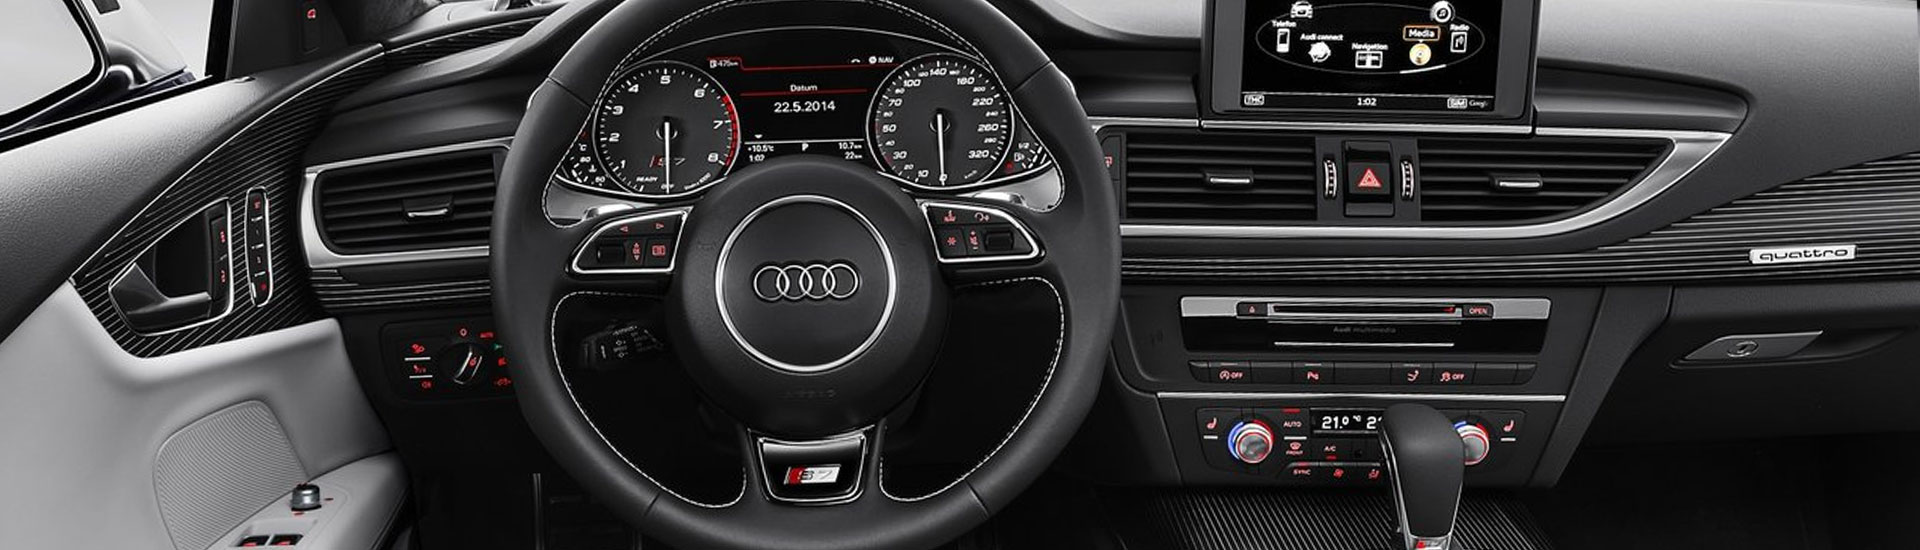 Audi S7 Custom Dash Kits